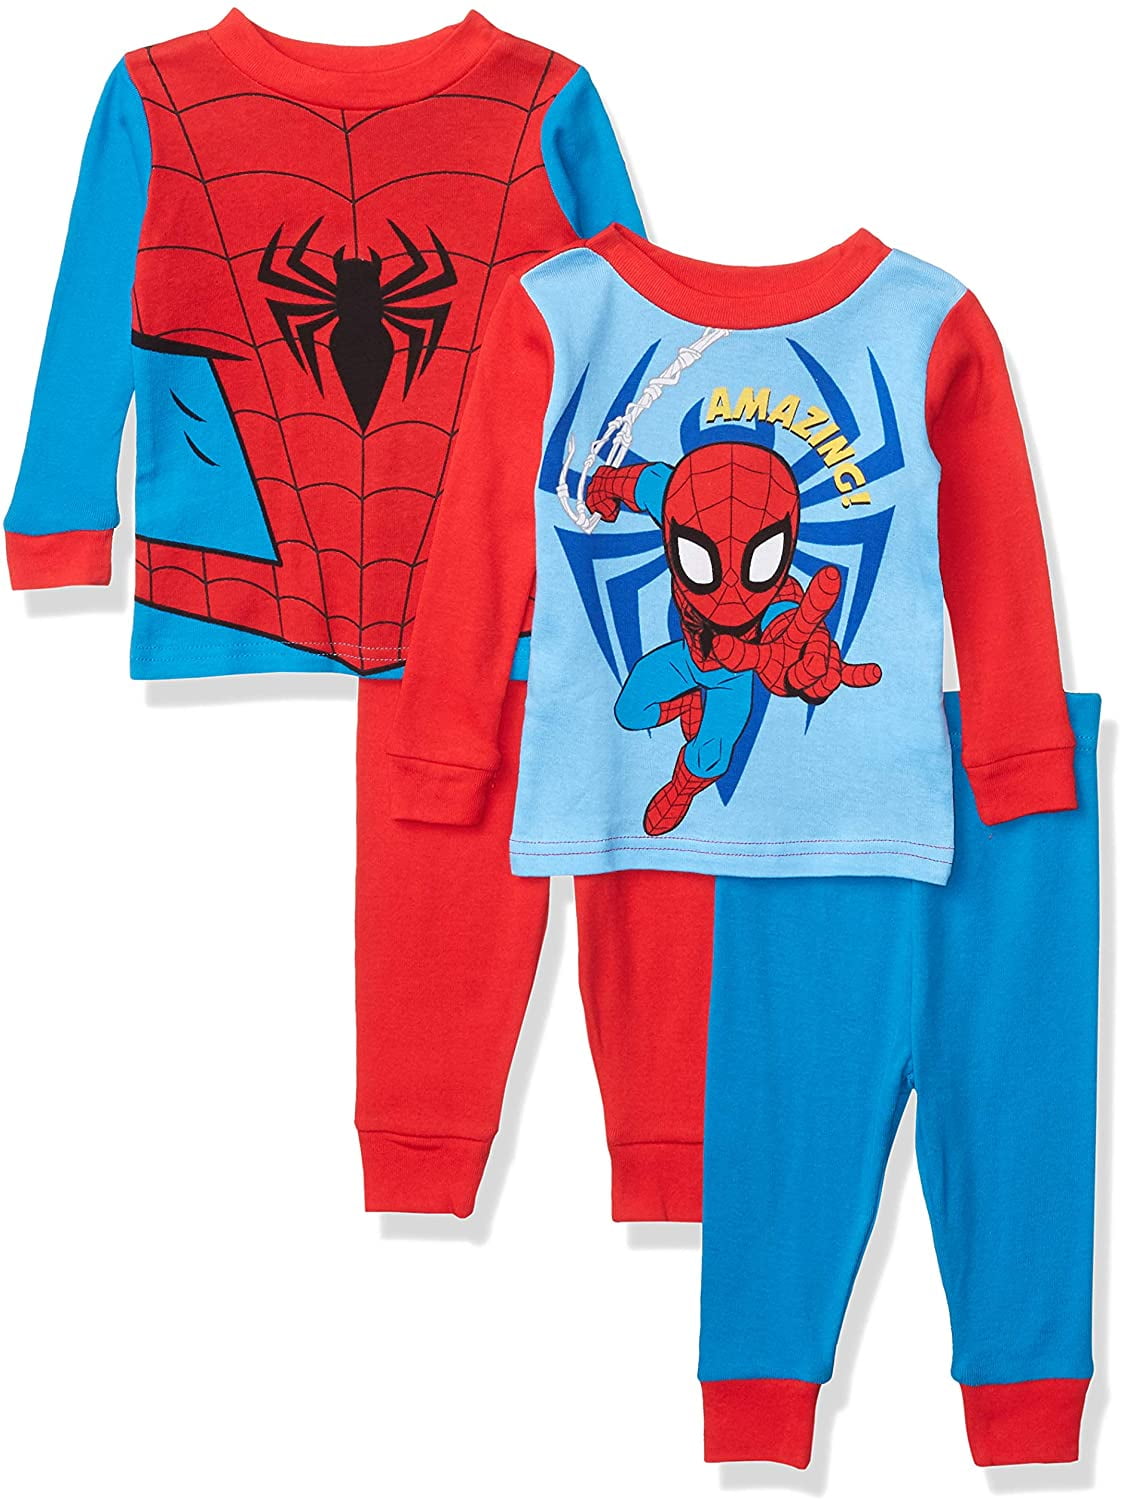 Boys Pajamas Set 100% Cotton Spiderman Kids Short Pjs Summer Toddler Sleepwear